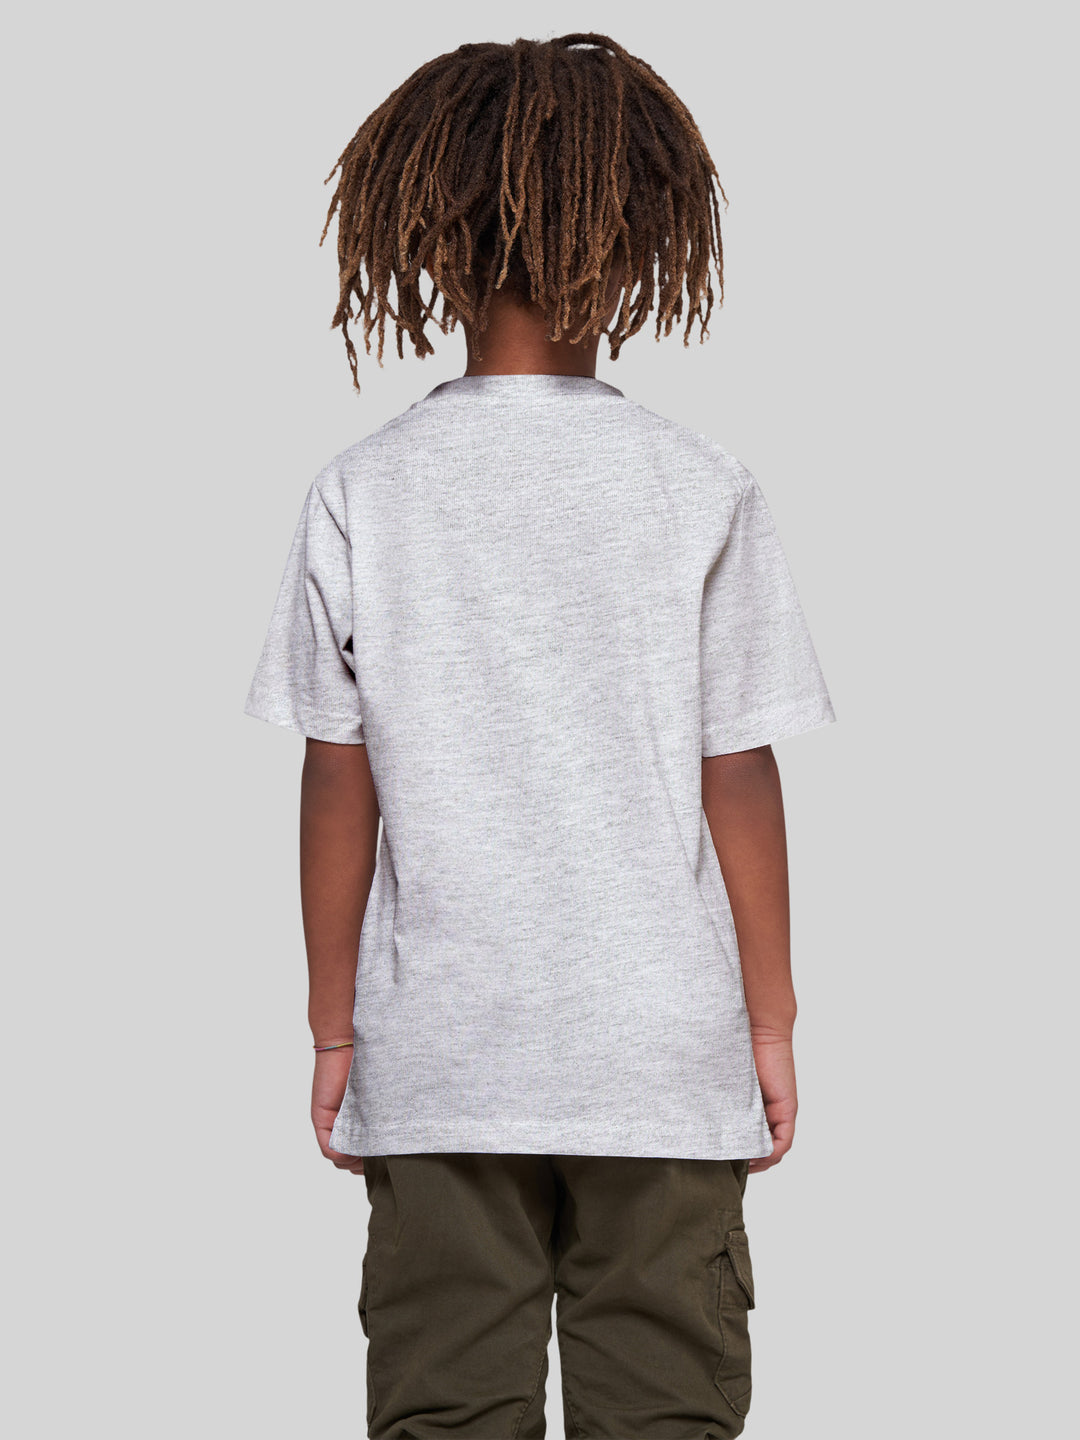 FINN | Kids T-Shirt Robbe